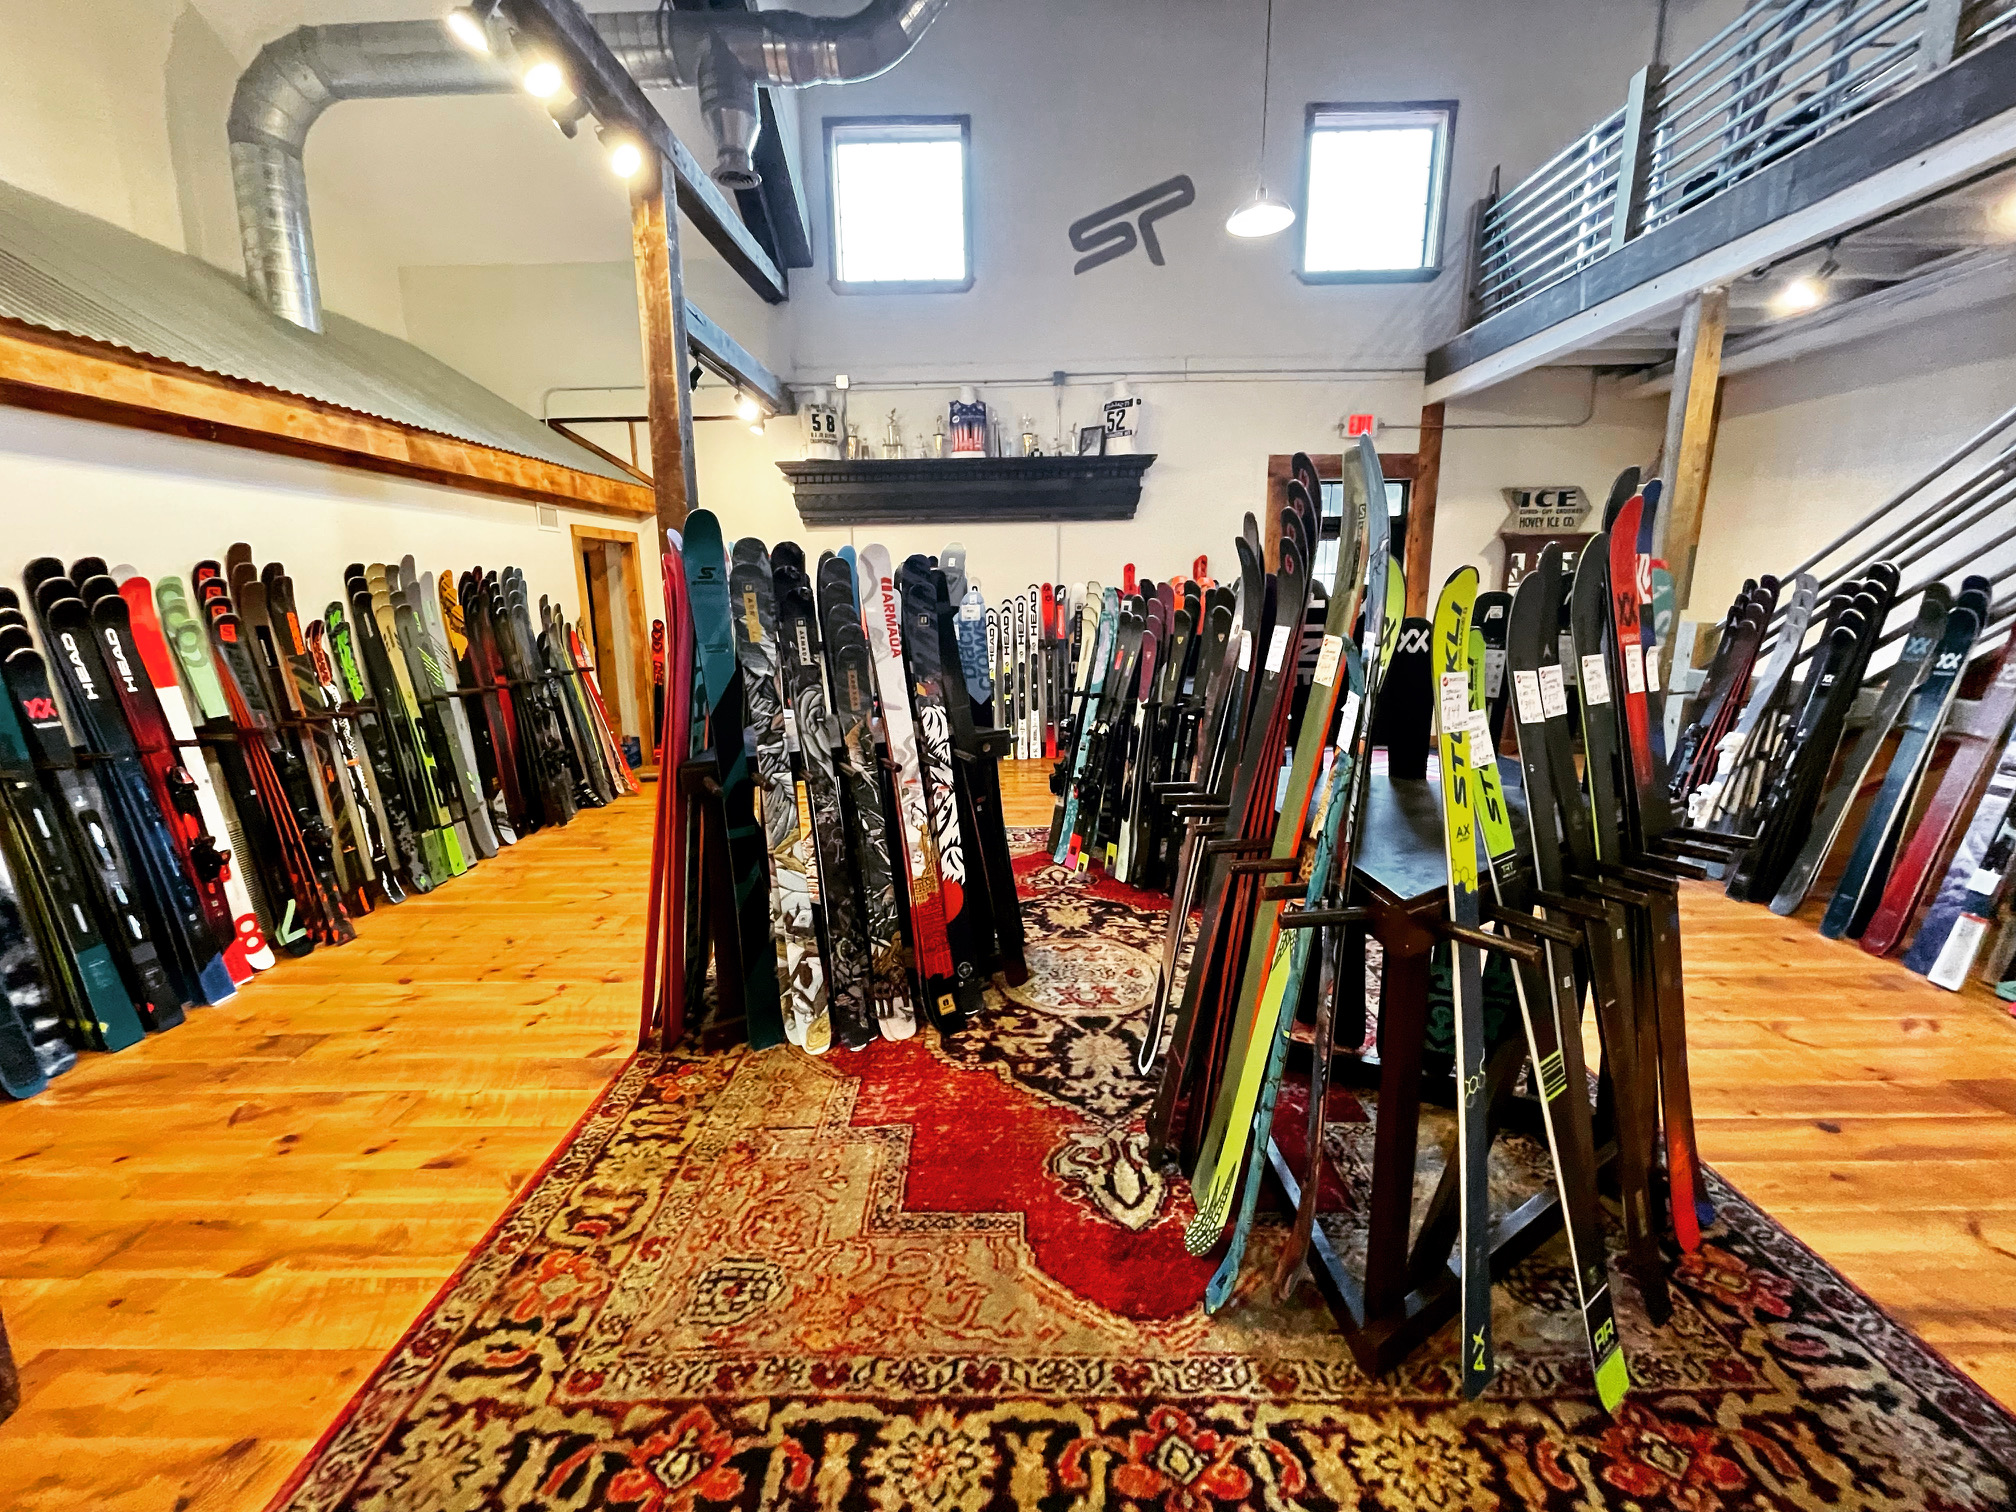 skis on display in the ski room